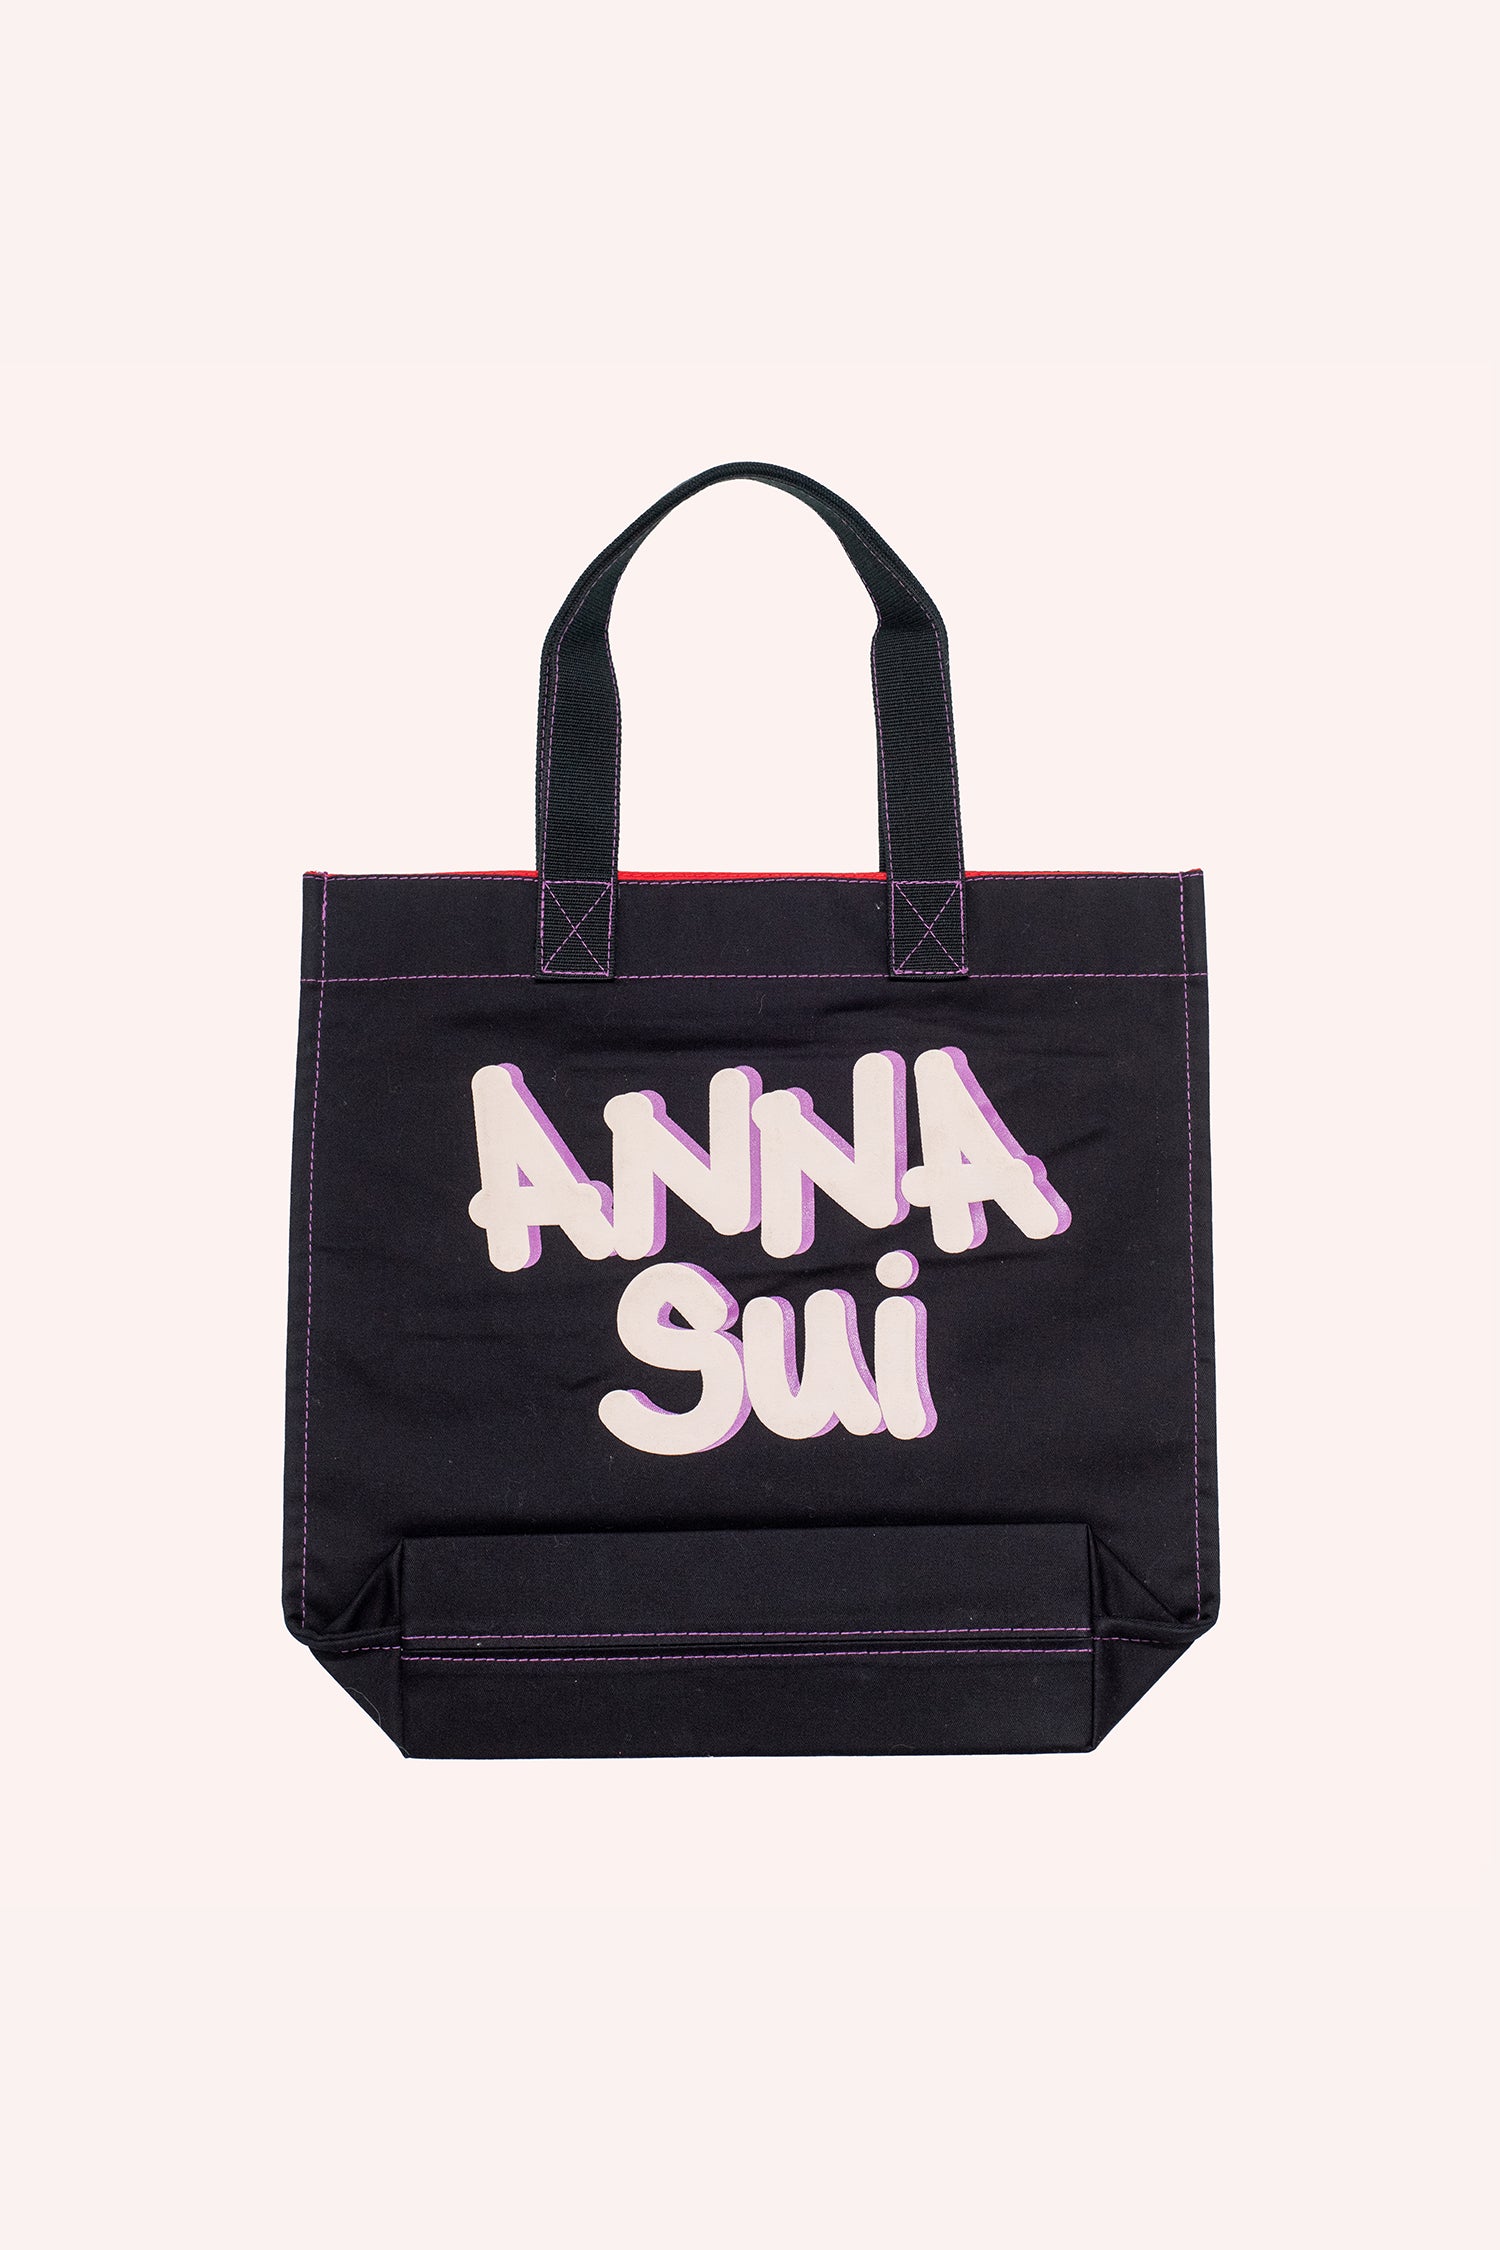 Tote bag, forma quadrata nera, marchio Anna Sui sull'altro lato in caratteri grandi